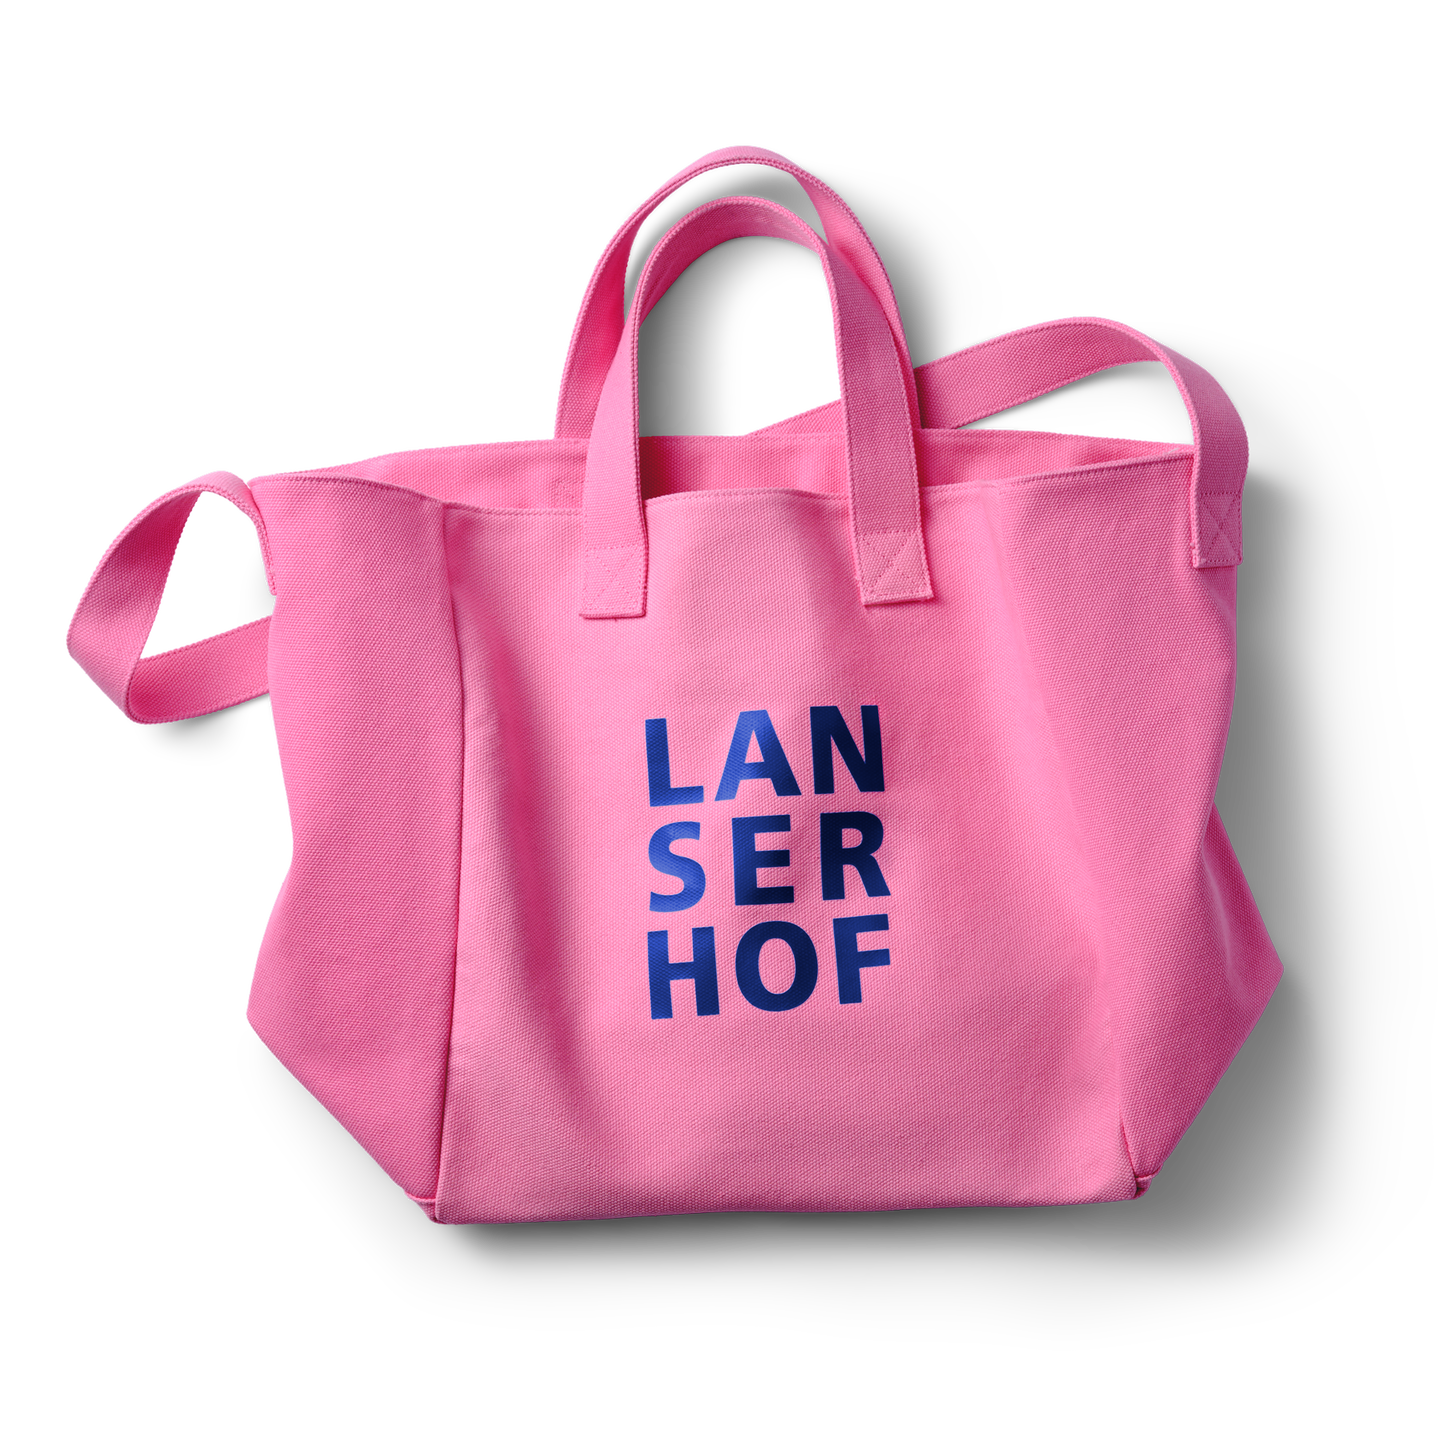 LANSERHOF beach bag pink